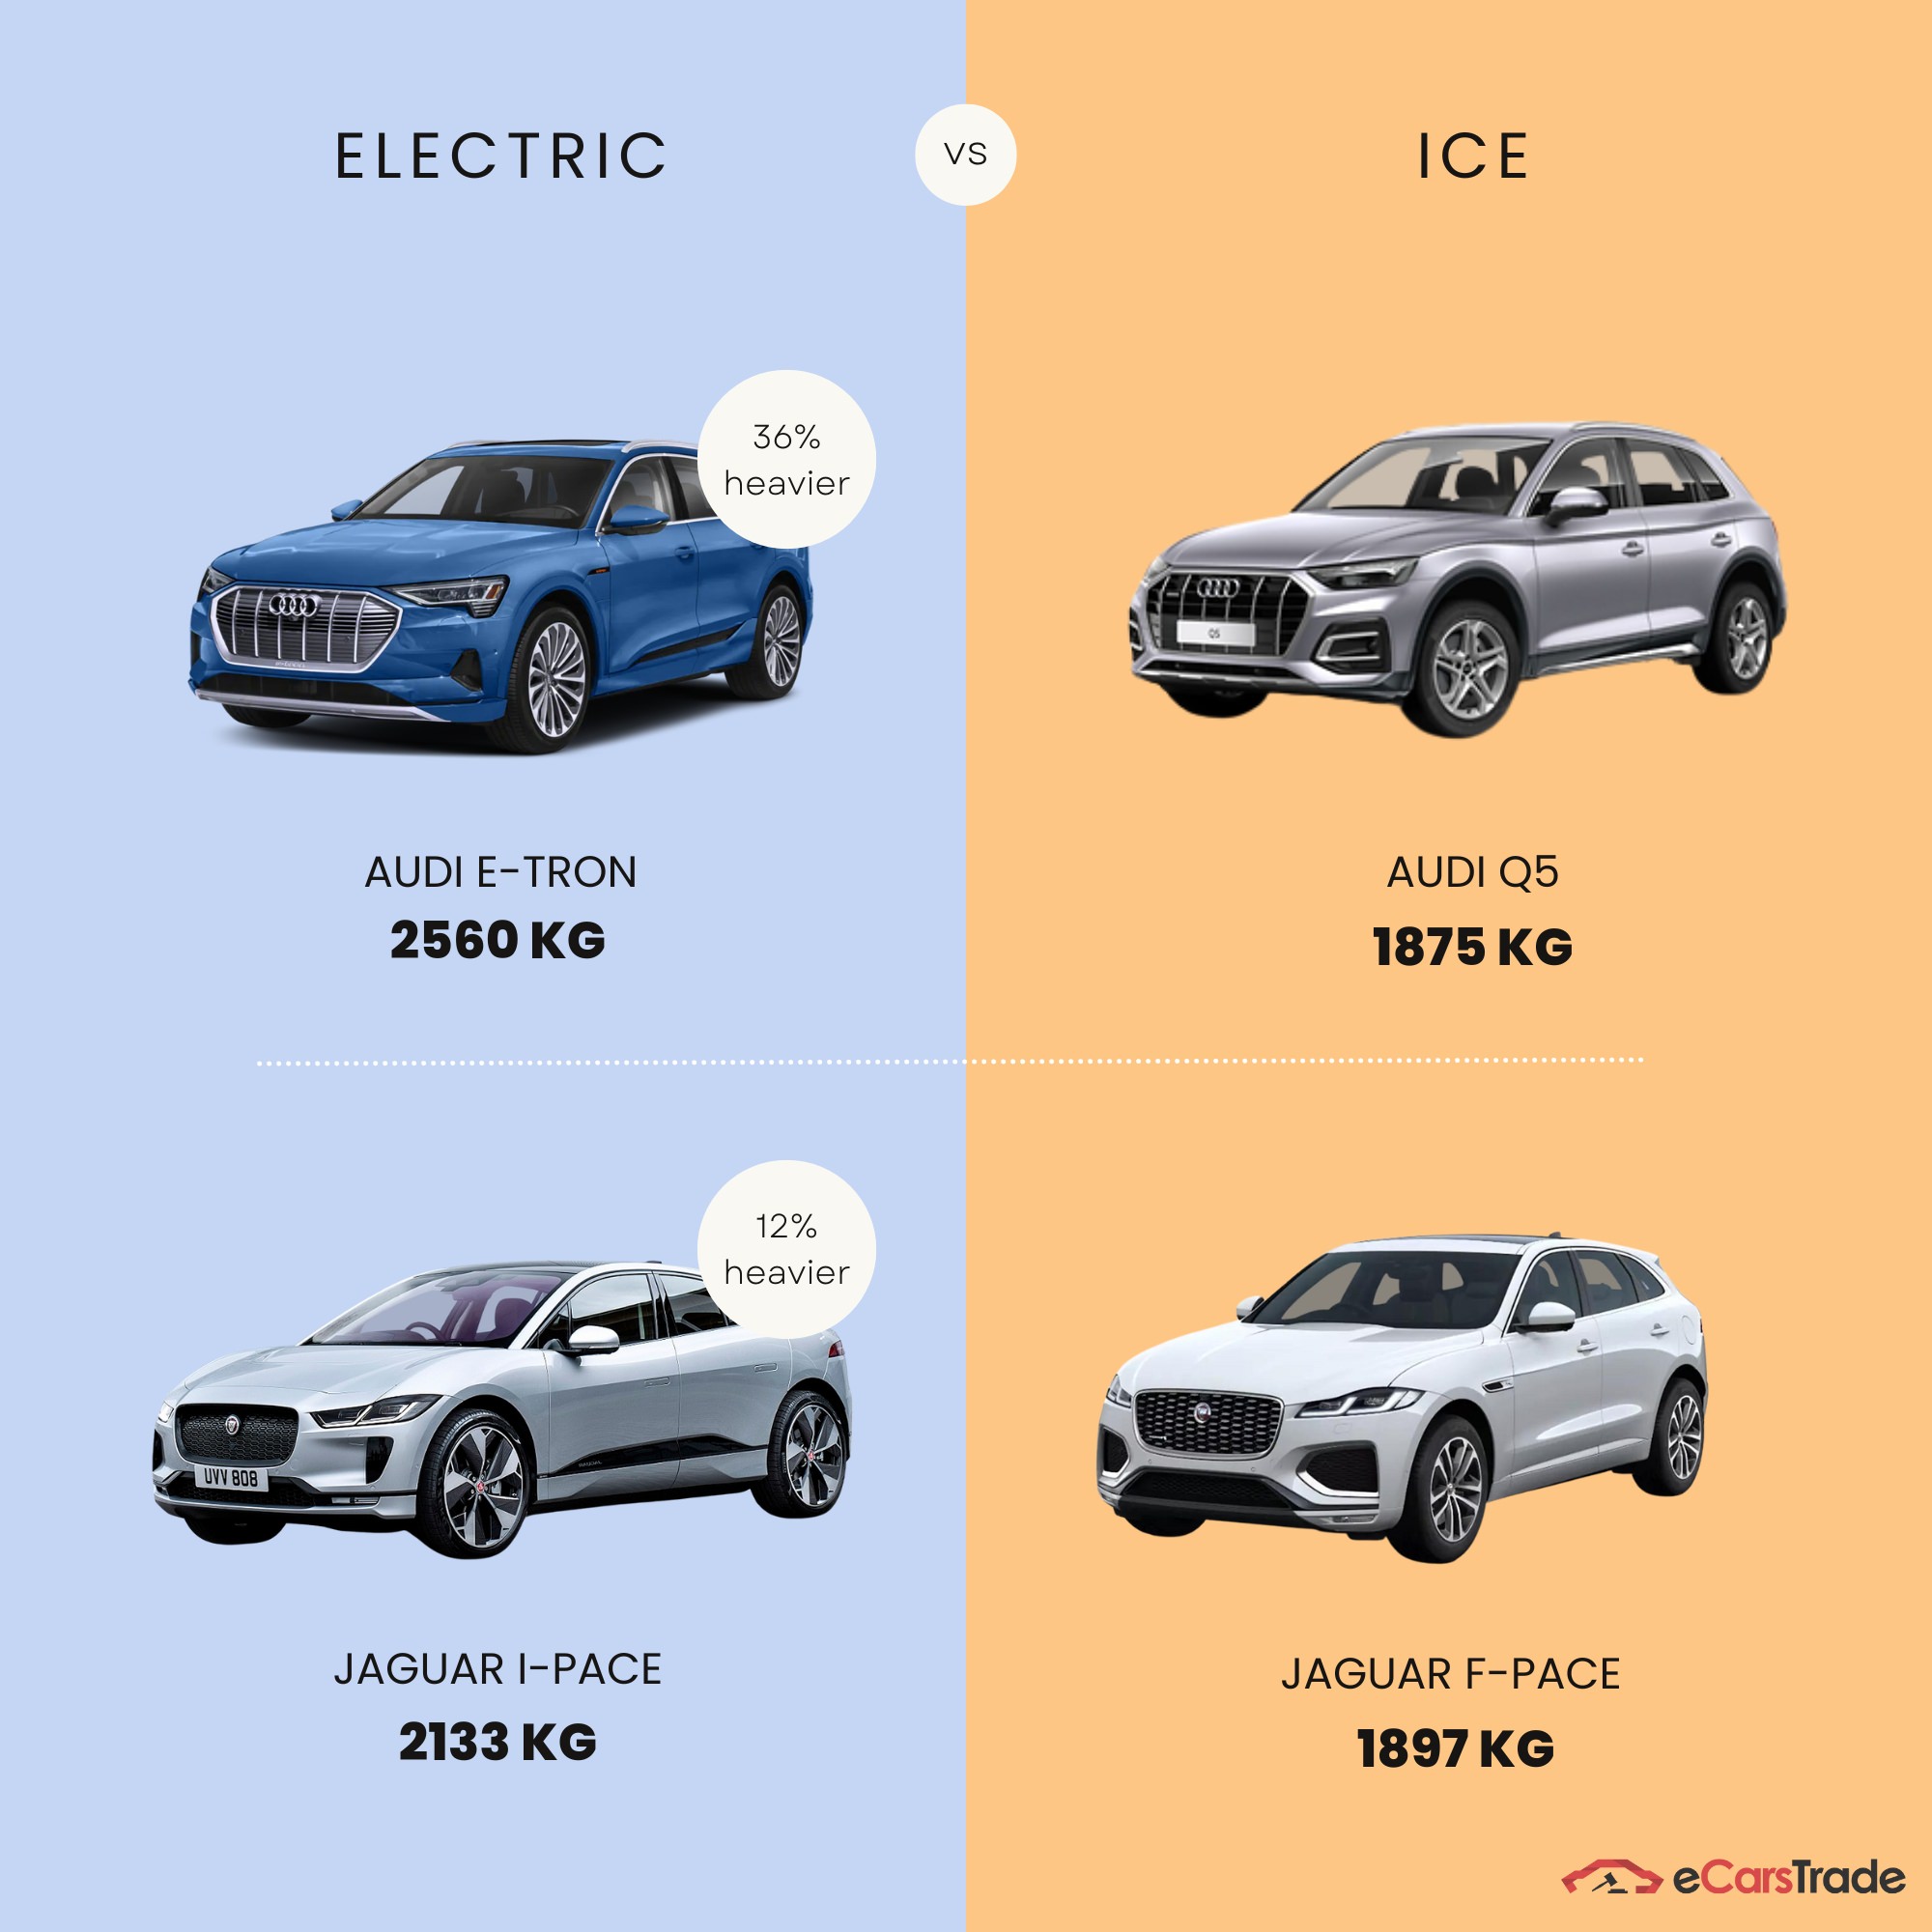 infografika przedstawiająca różnicę masy między pojazdami elektrycznymi a pojazdami z silnikiem spalinowym